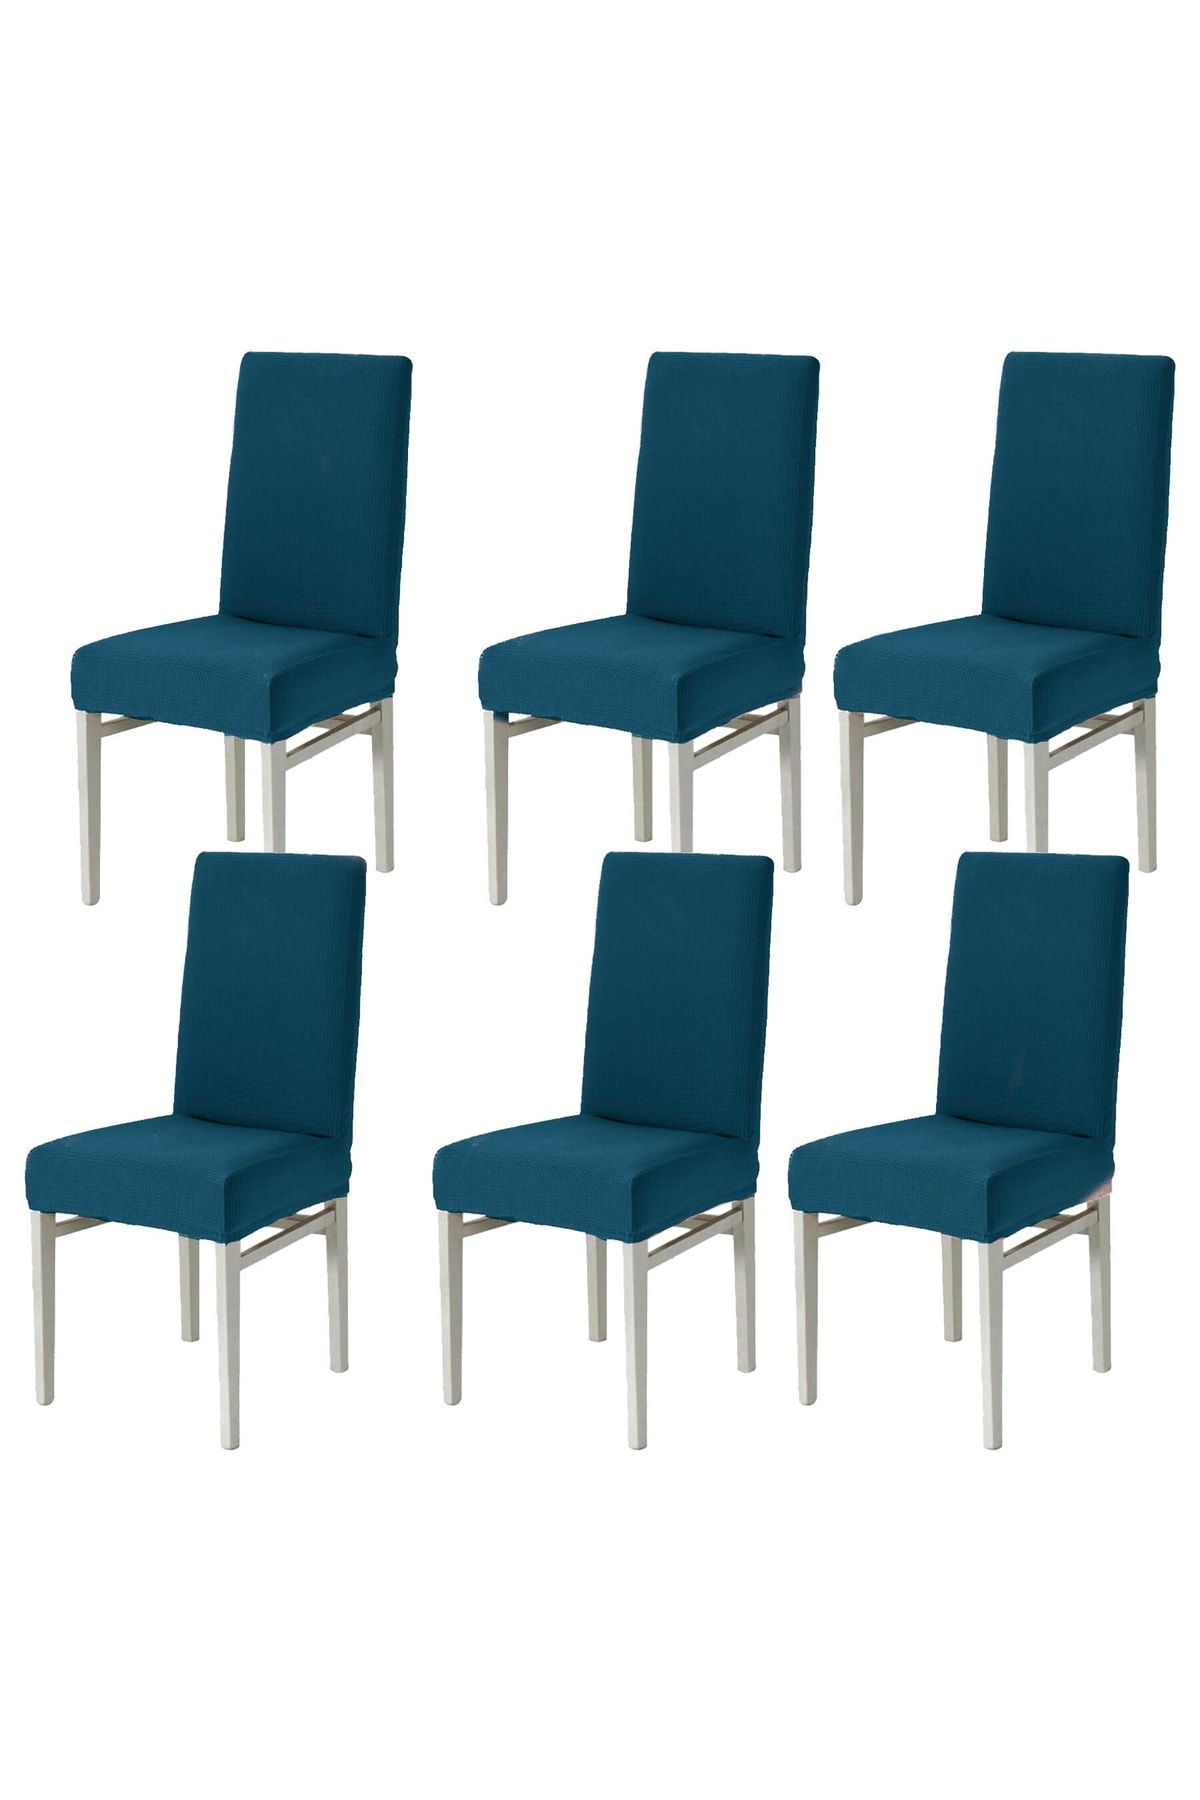 Faiend 6li Sandalye Kılıfı Yıkanabilir Likralı Esnek Lastikli Sandalye Örtü 6li Paket